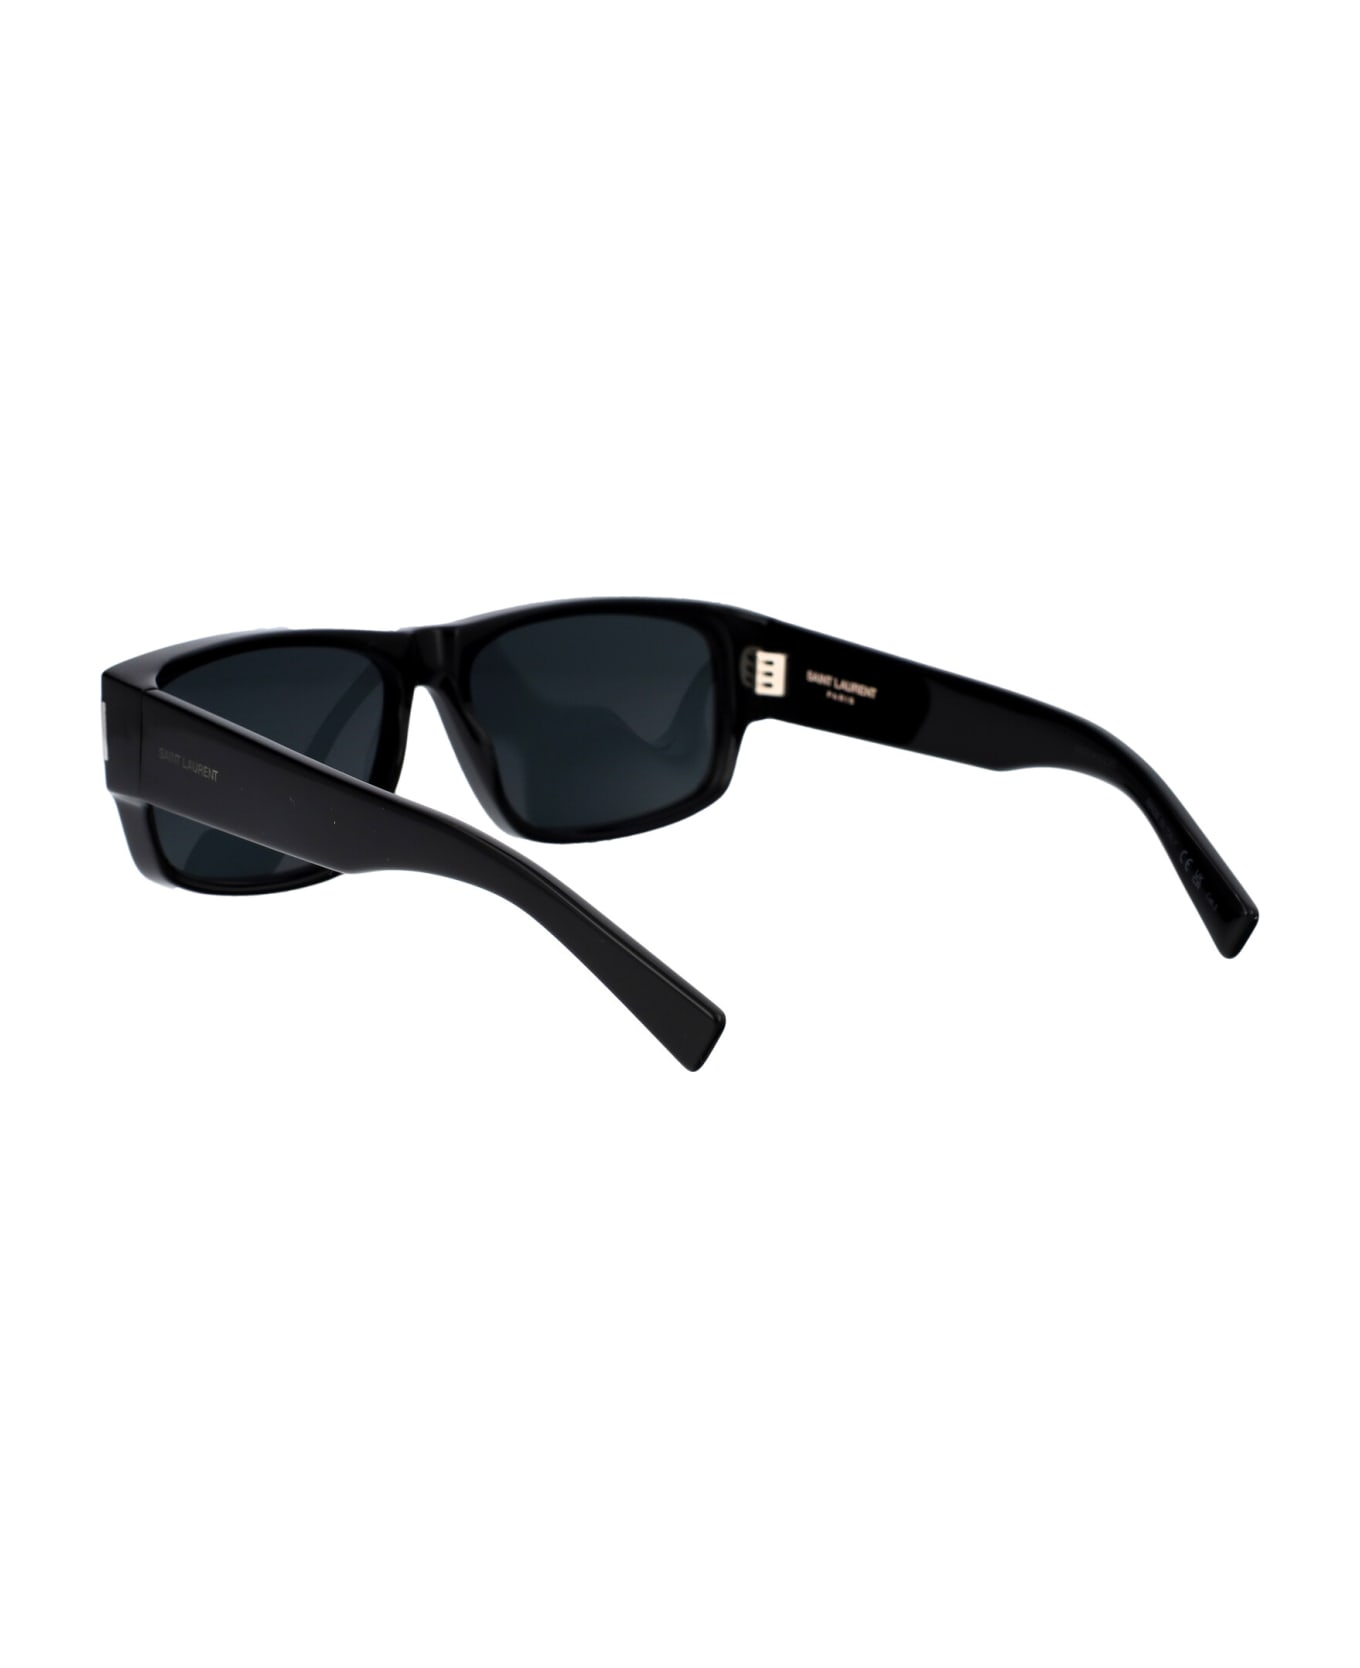 Saint Laurent Eyewear Sl 689 Sunglasses - 001 BLACK BLACK BLACK サングラス